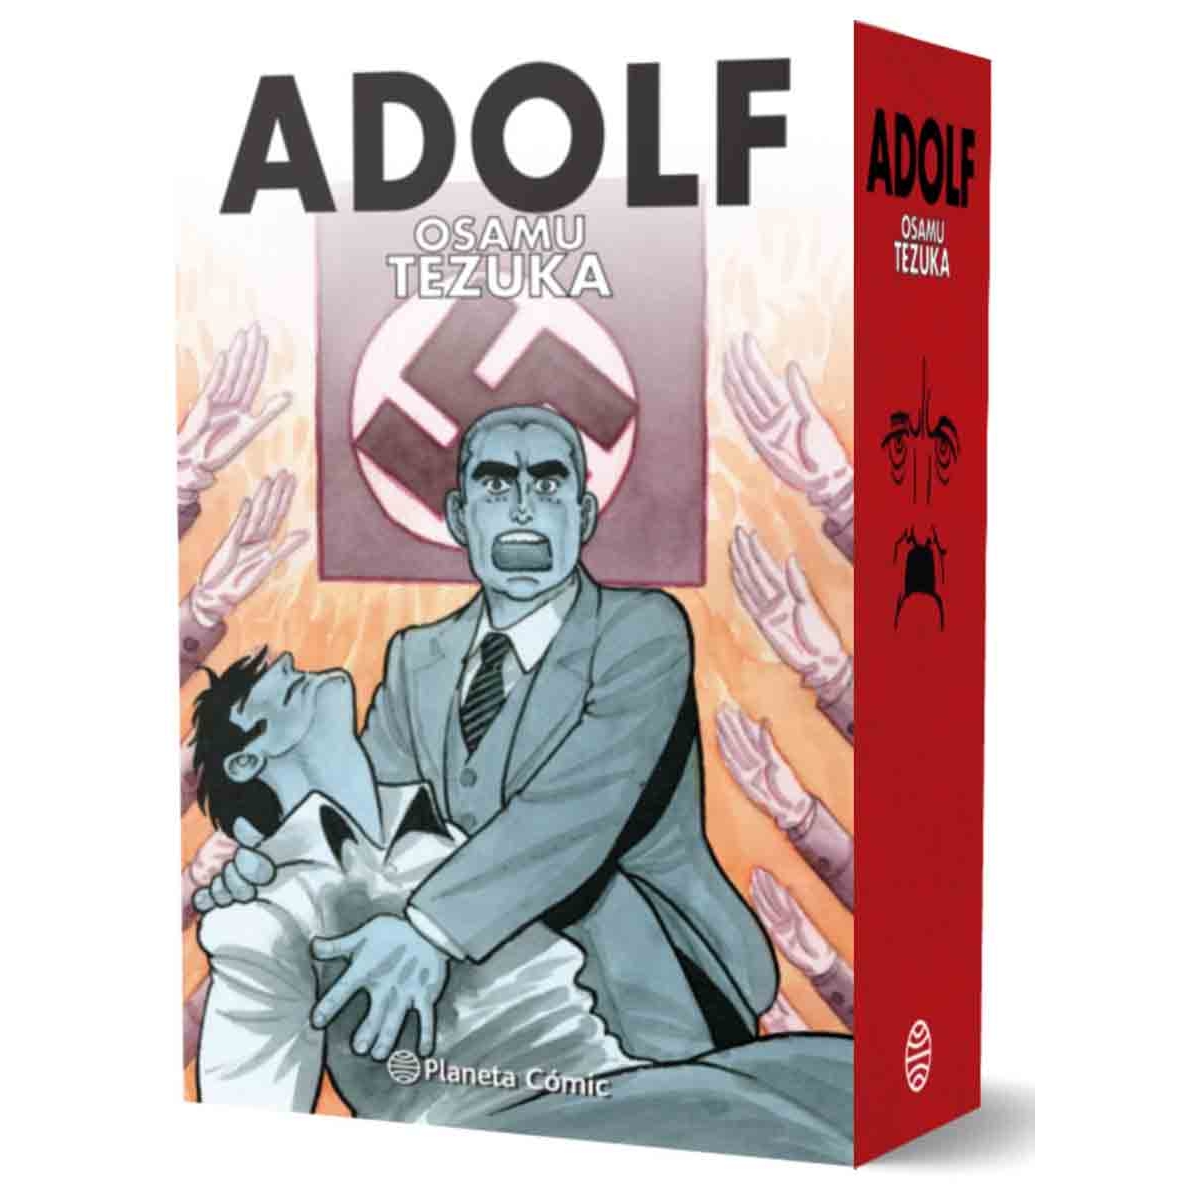 Adolf de Osamu Tezuka